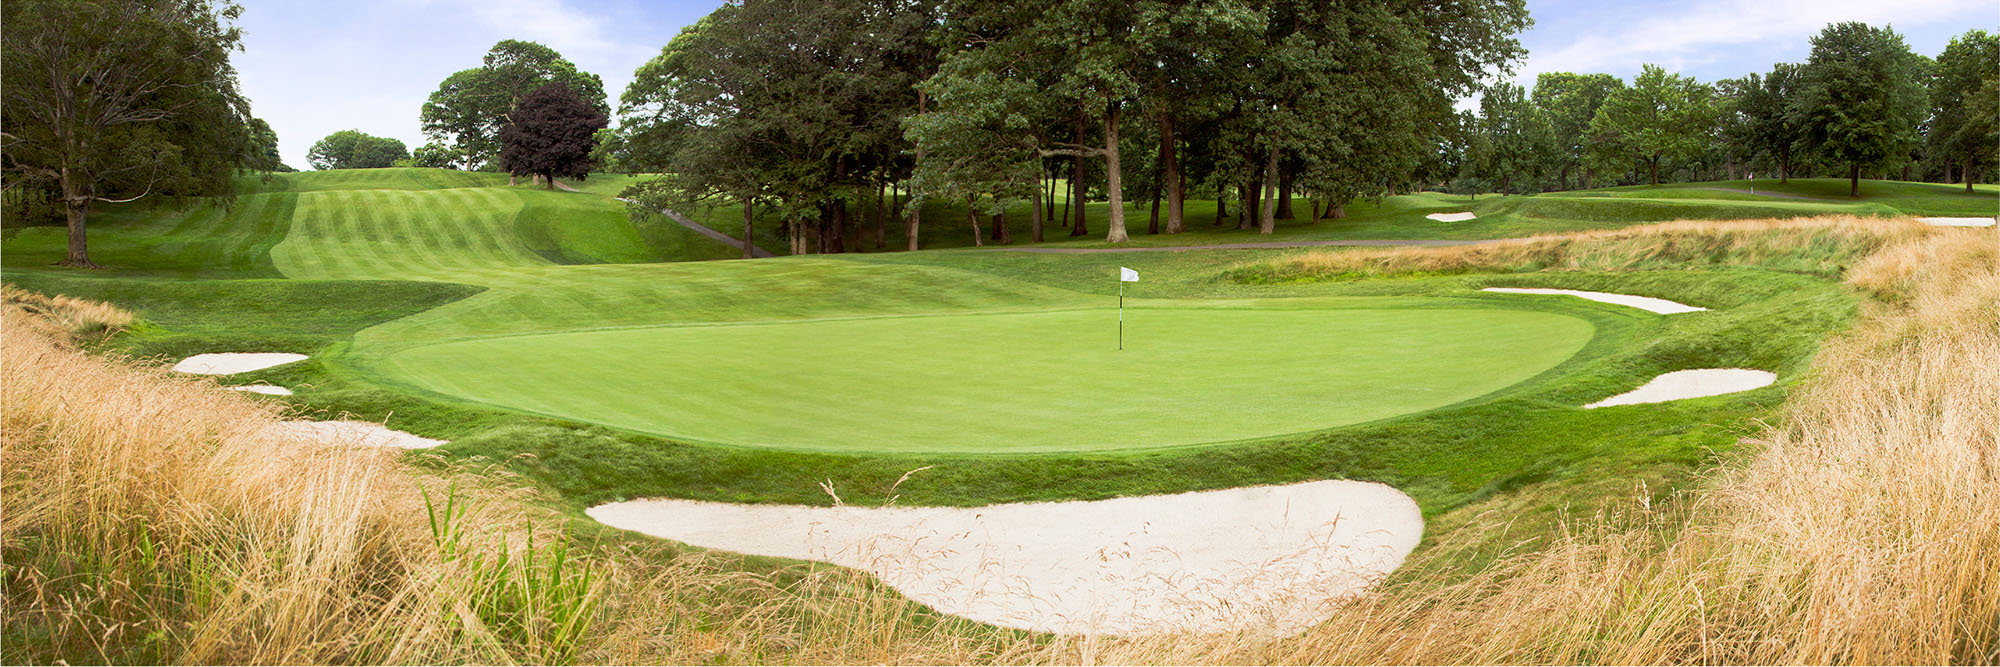 Golf Course Image - Morris County Golf Club No. 7